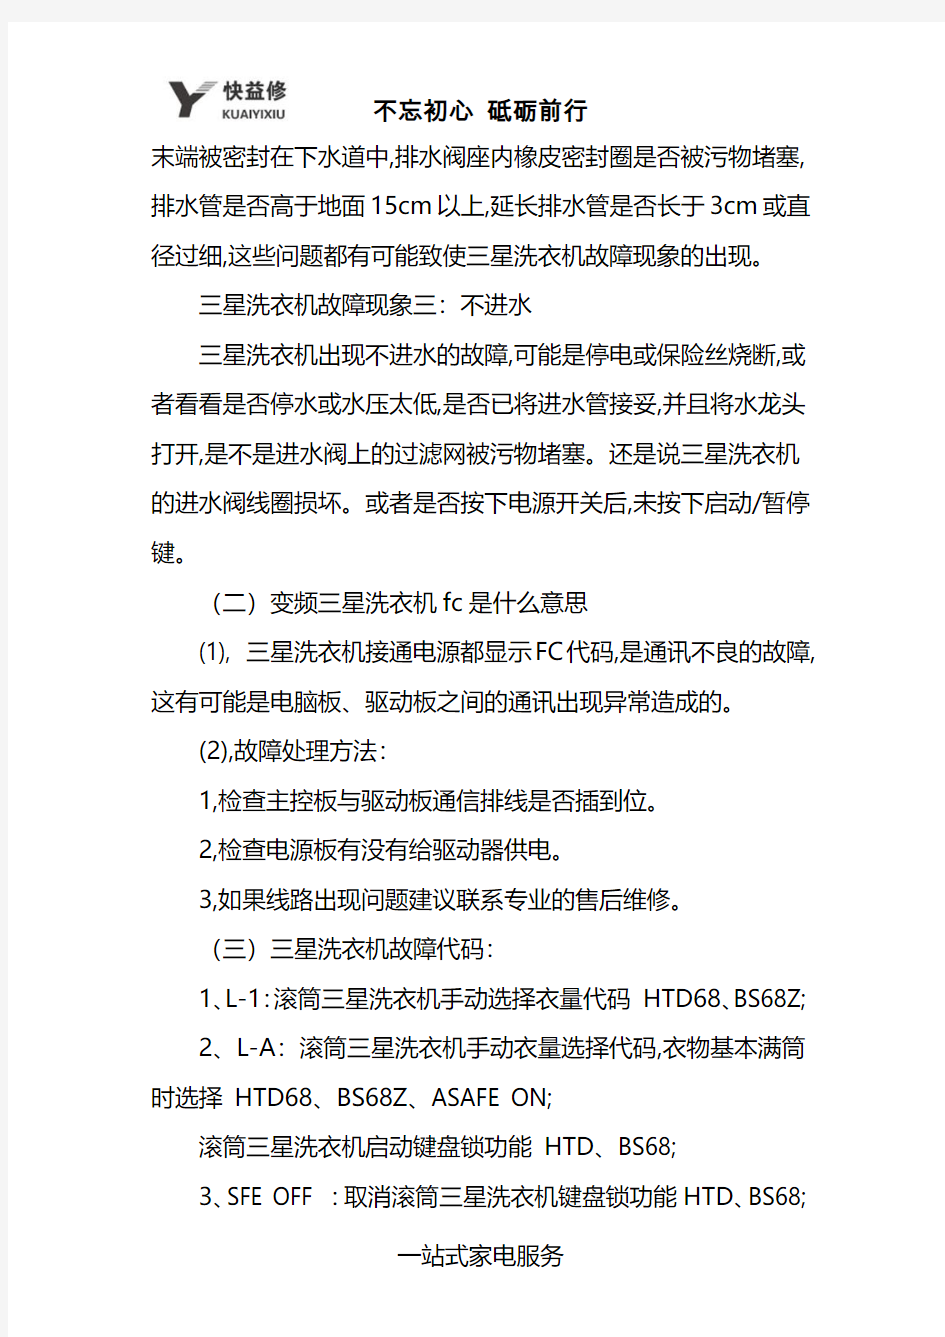 深圳三星洗衣机显示fc故障代码维修电话